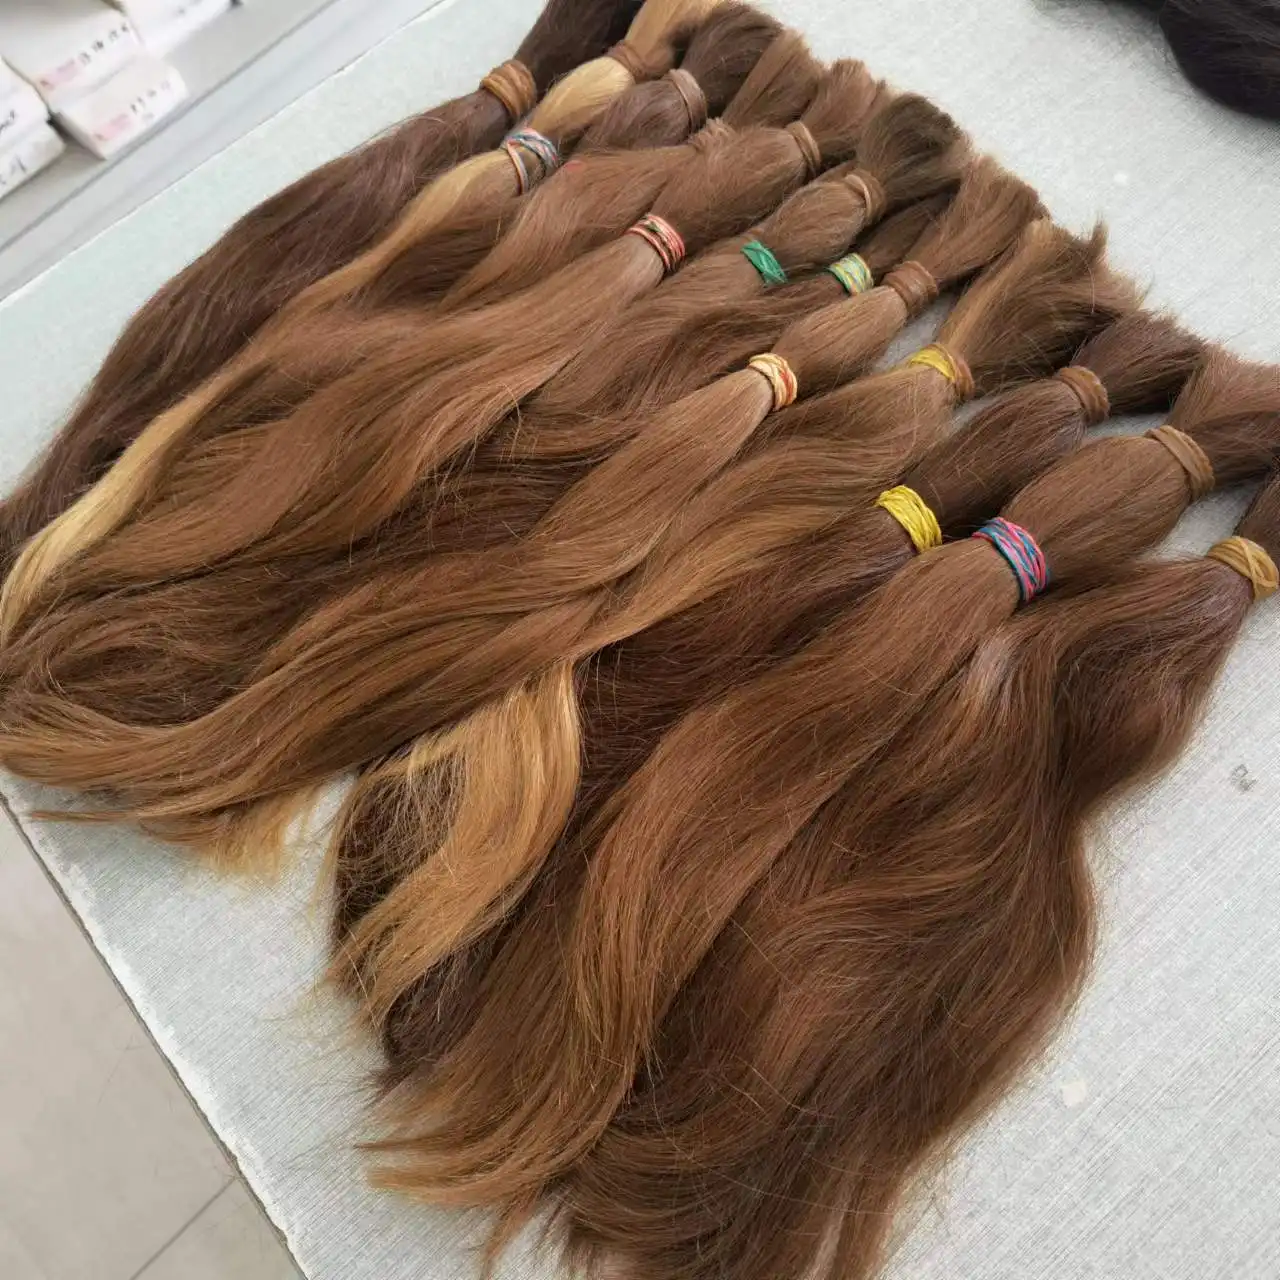 Nga tóc con người số lượng lớn Trinh Nữ 100% Con người chưa qua chế biến lớp biểu bì tóc Remy tóc Nga